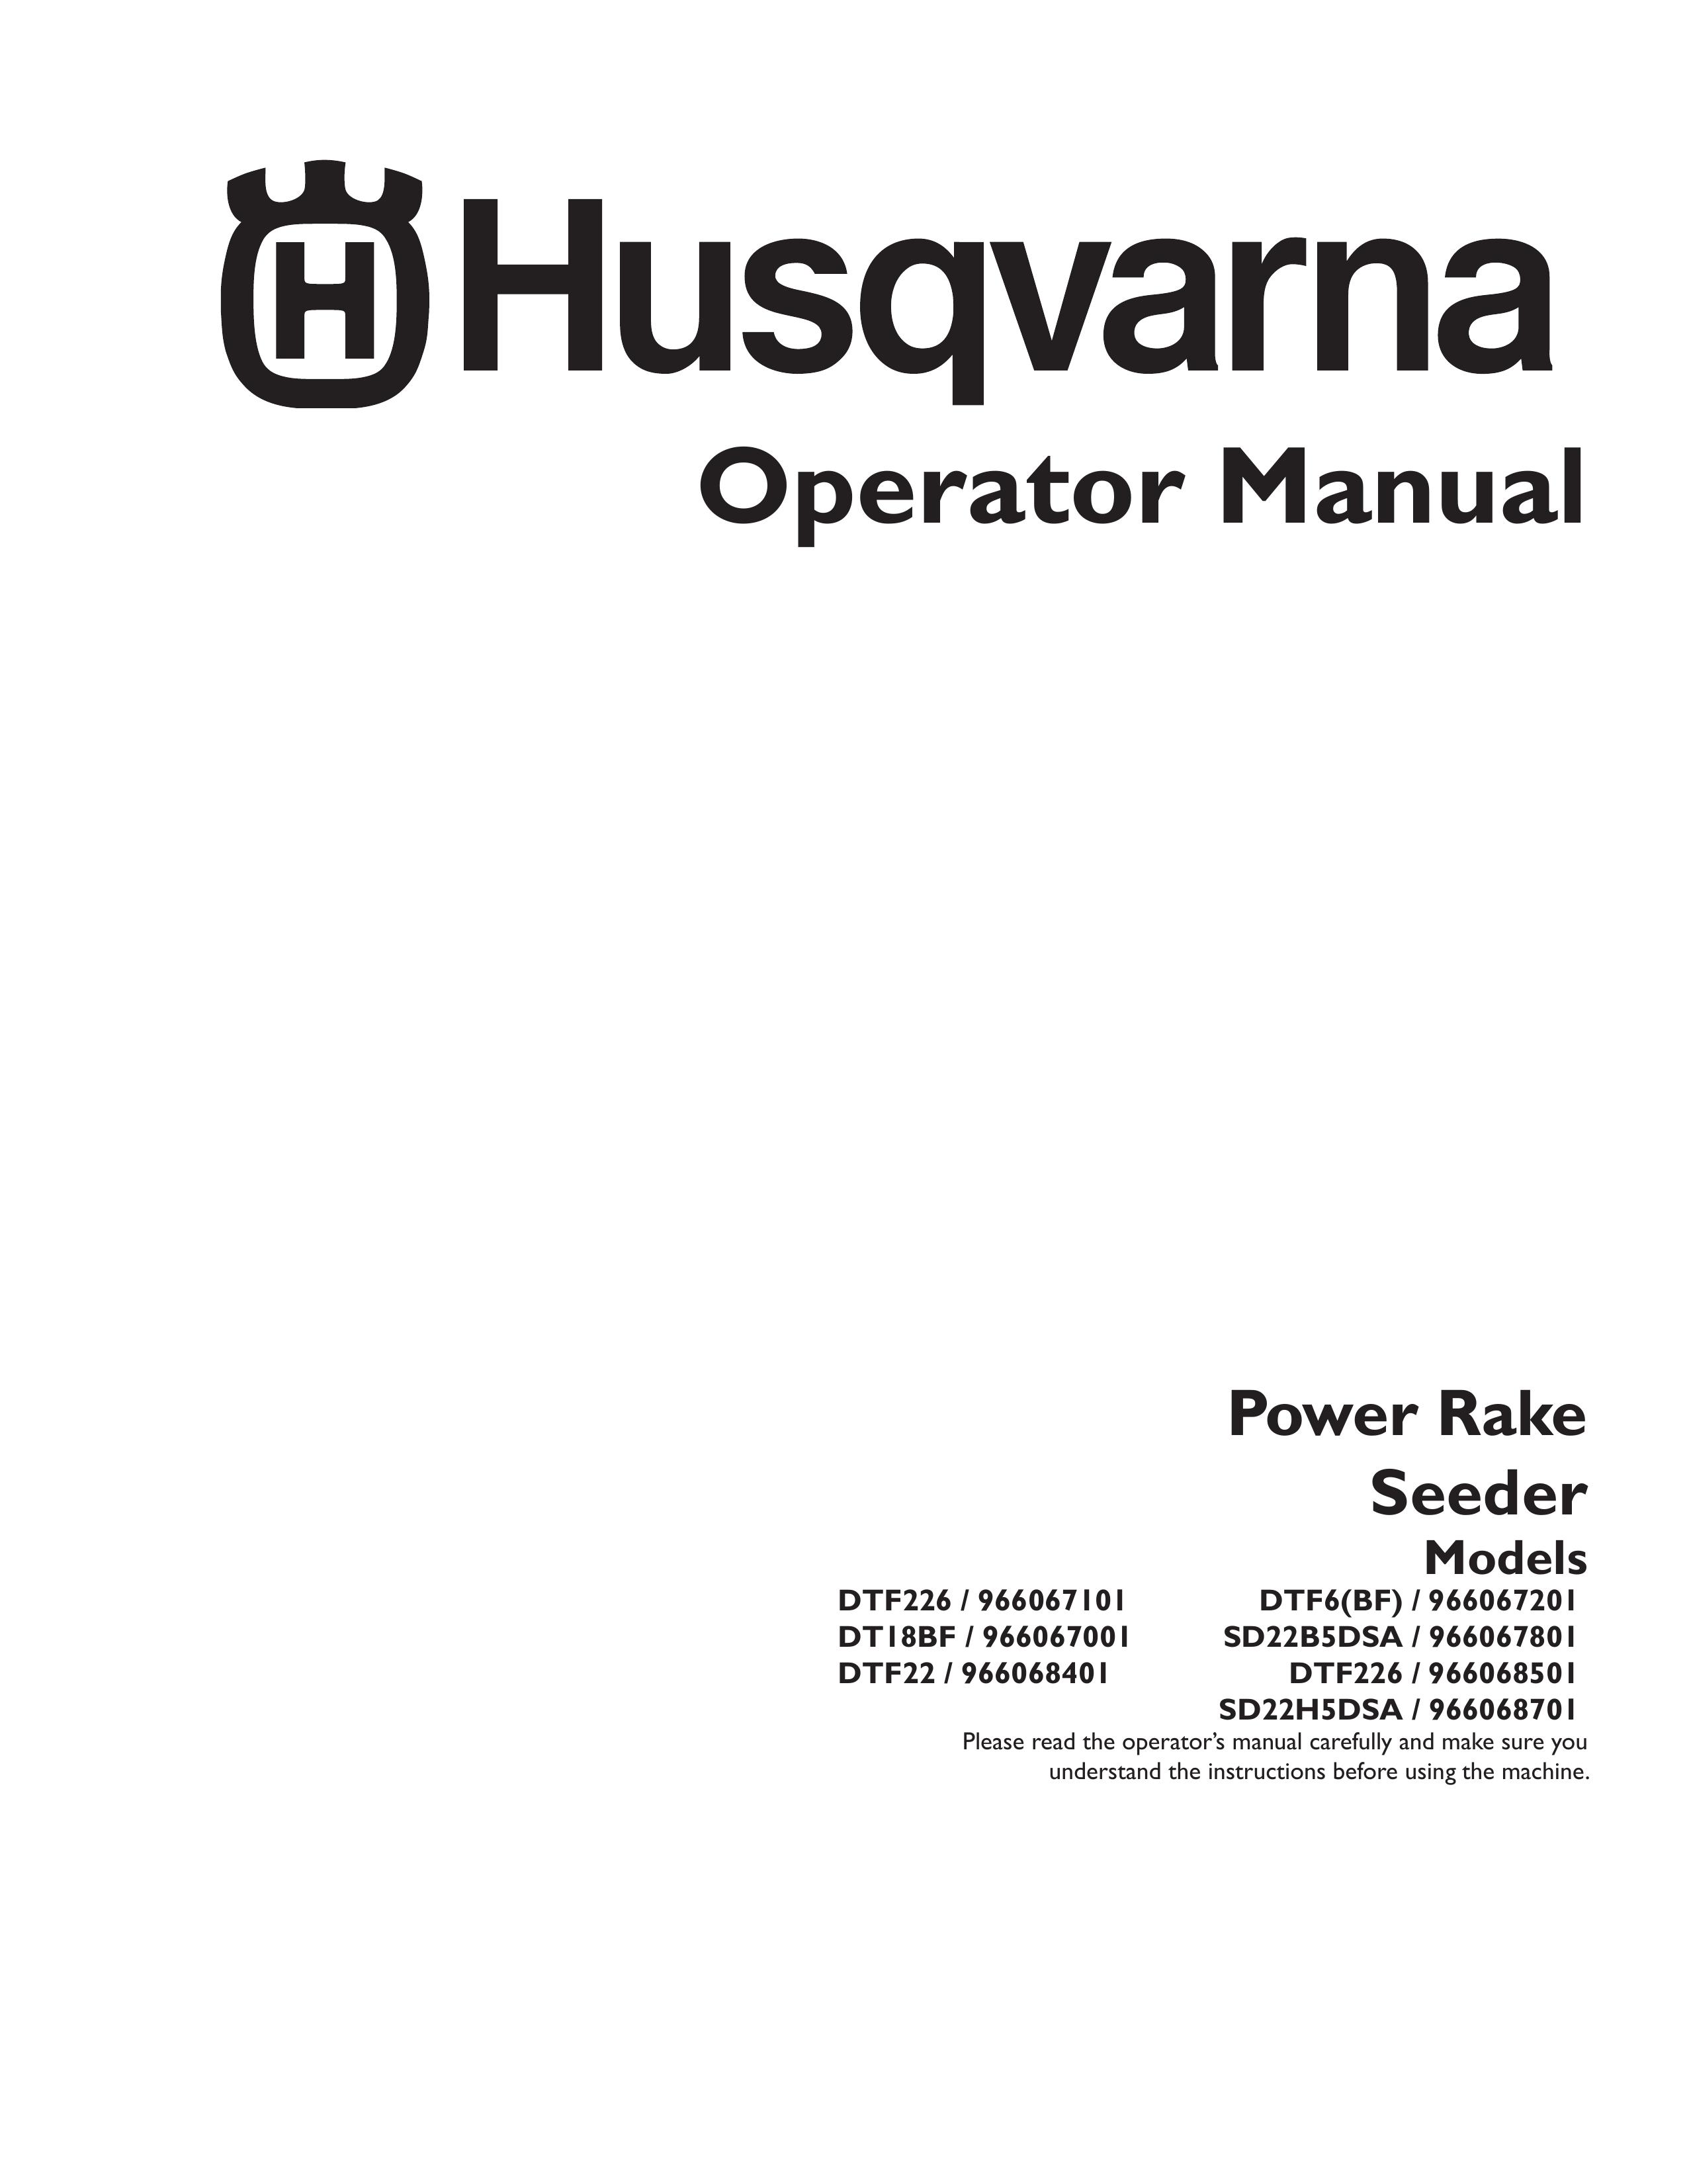 Husqvarna 966067001 Spreader User Manual